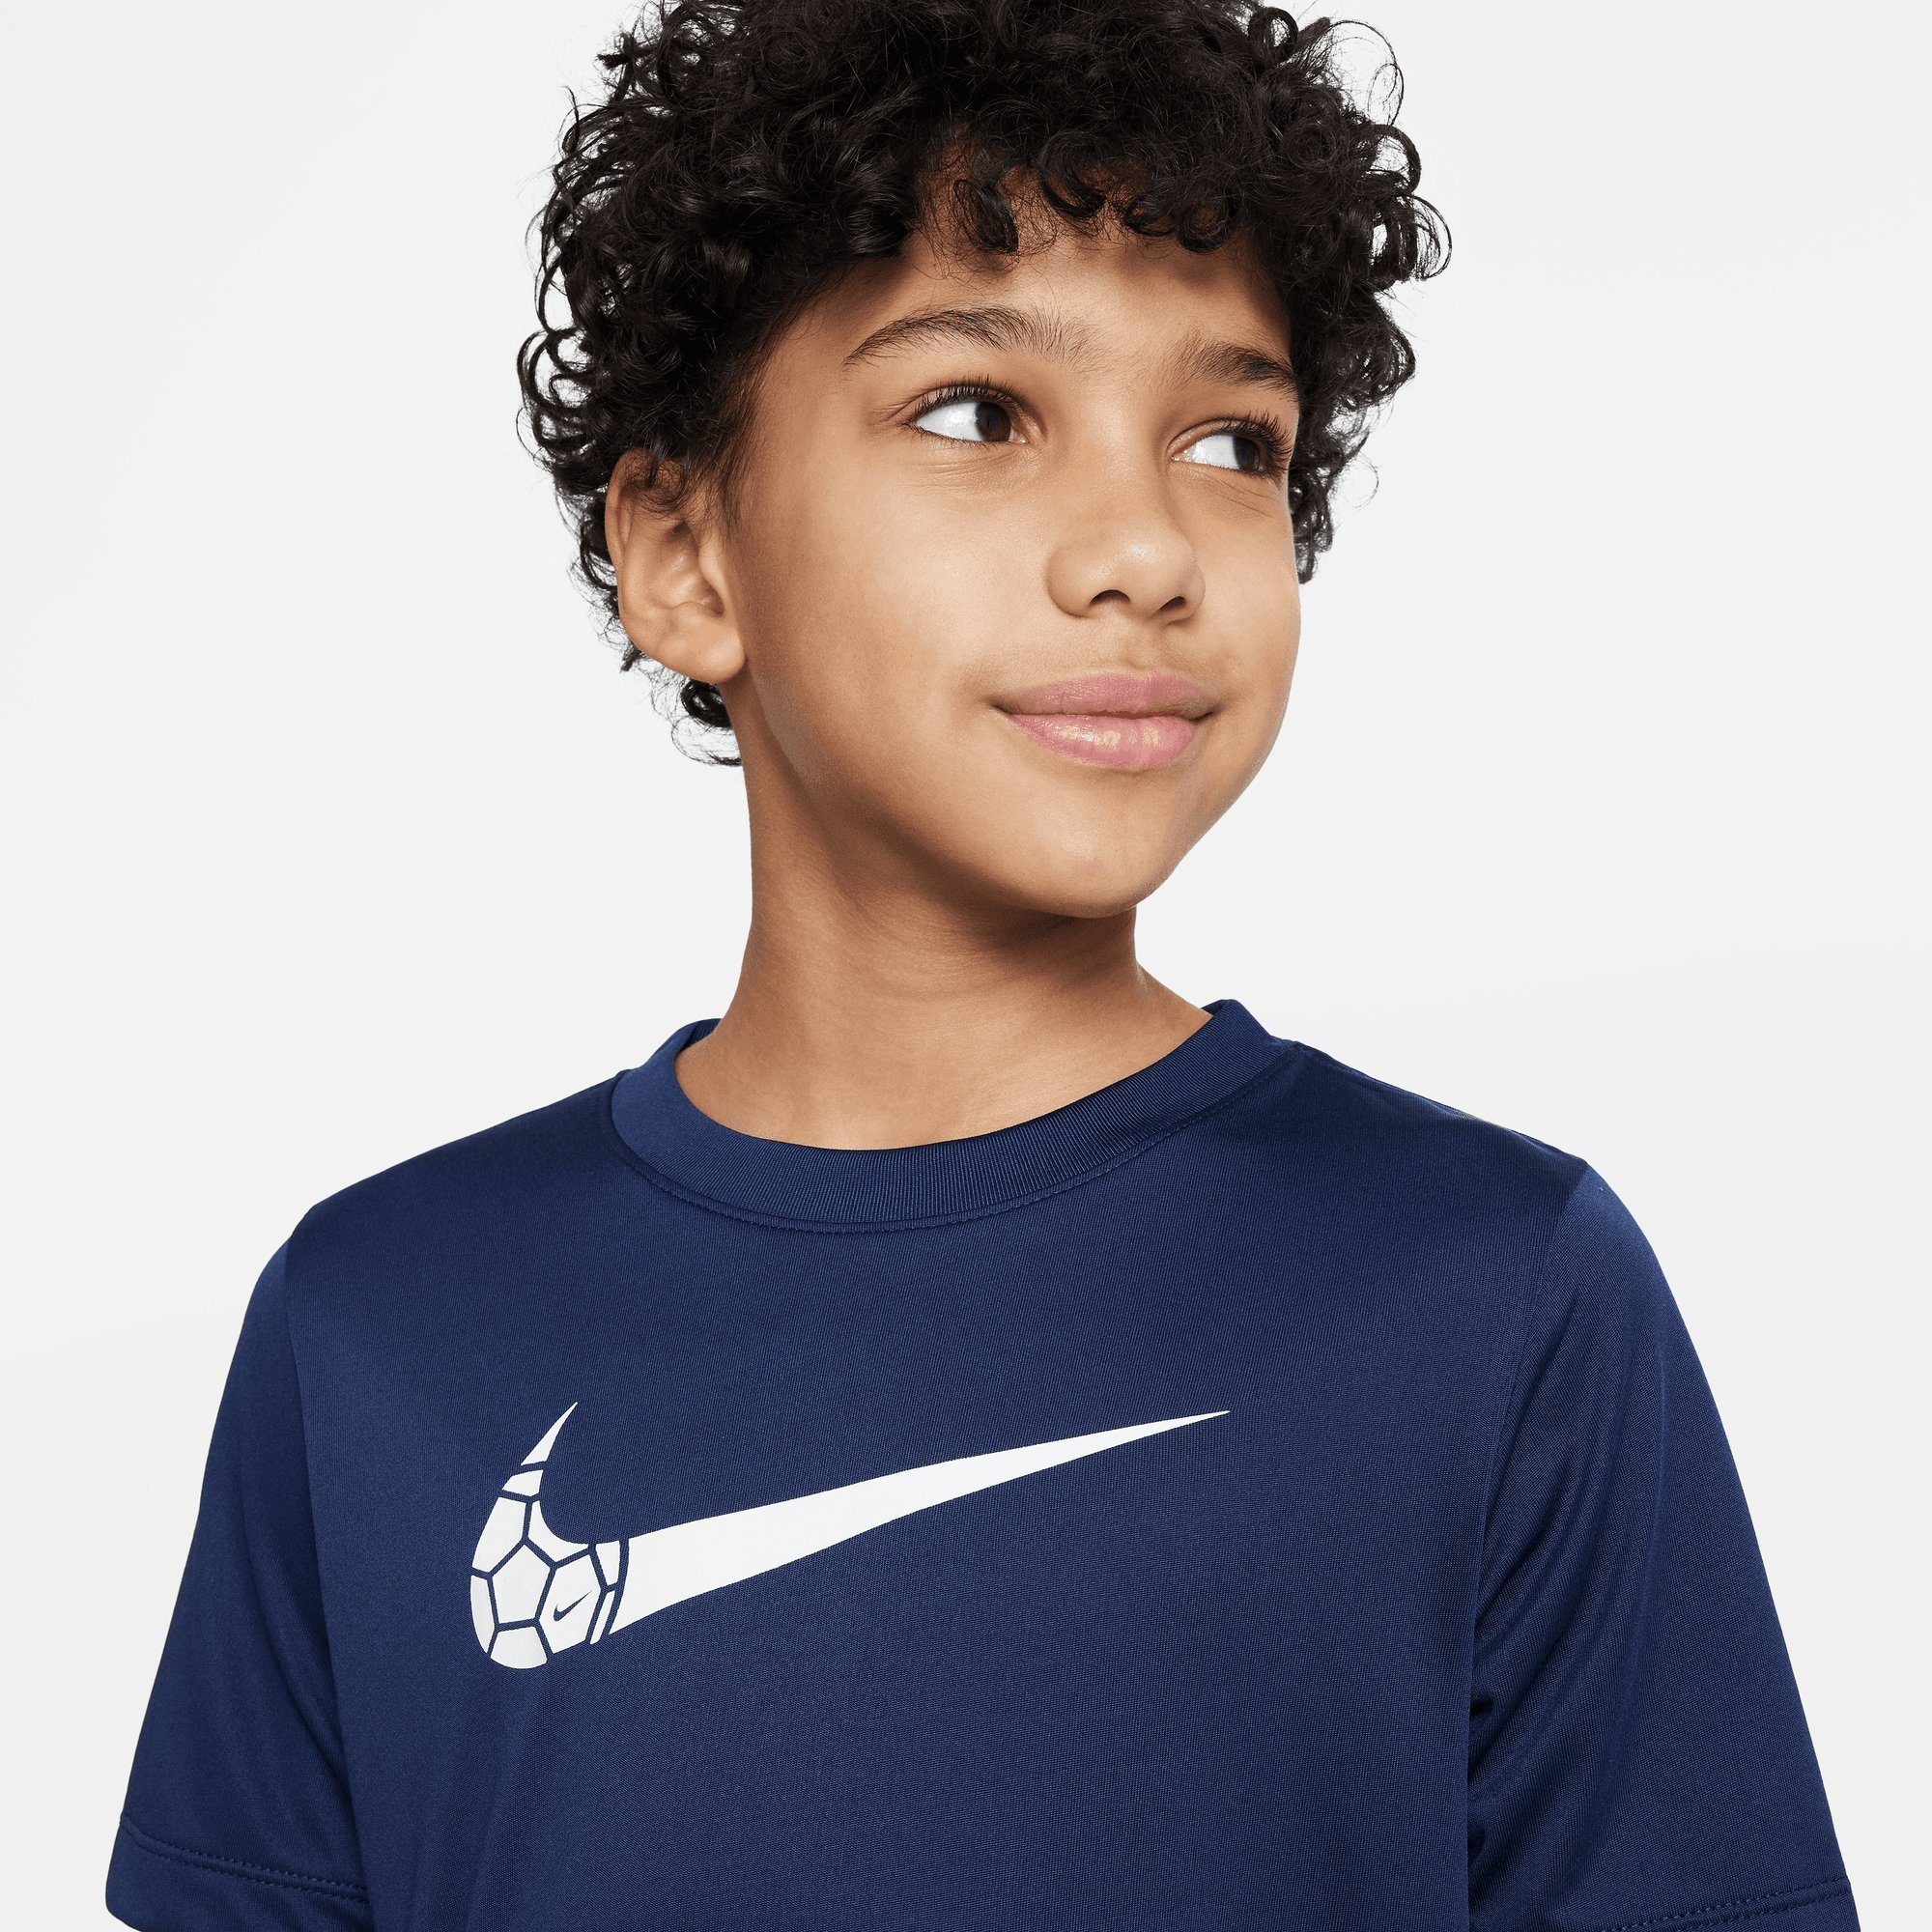 NAVY Sportswear DRI-FIT TRAINING BIG Nike T-Shirt (BOYS) T-SHIRT KIDS' MIDNIGHT